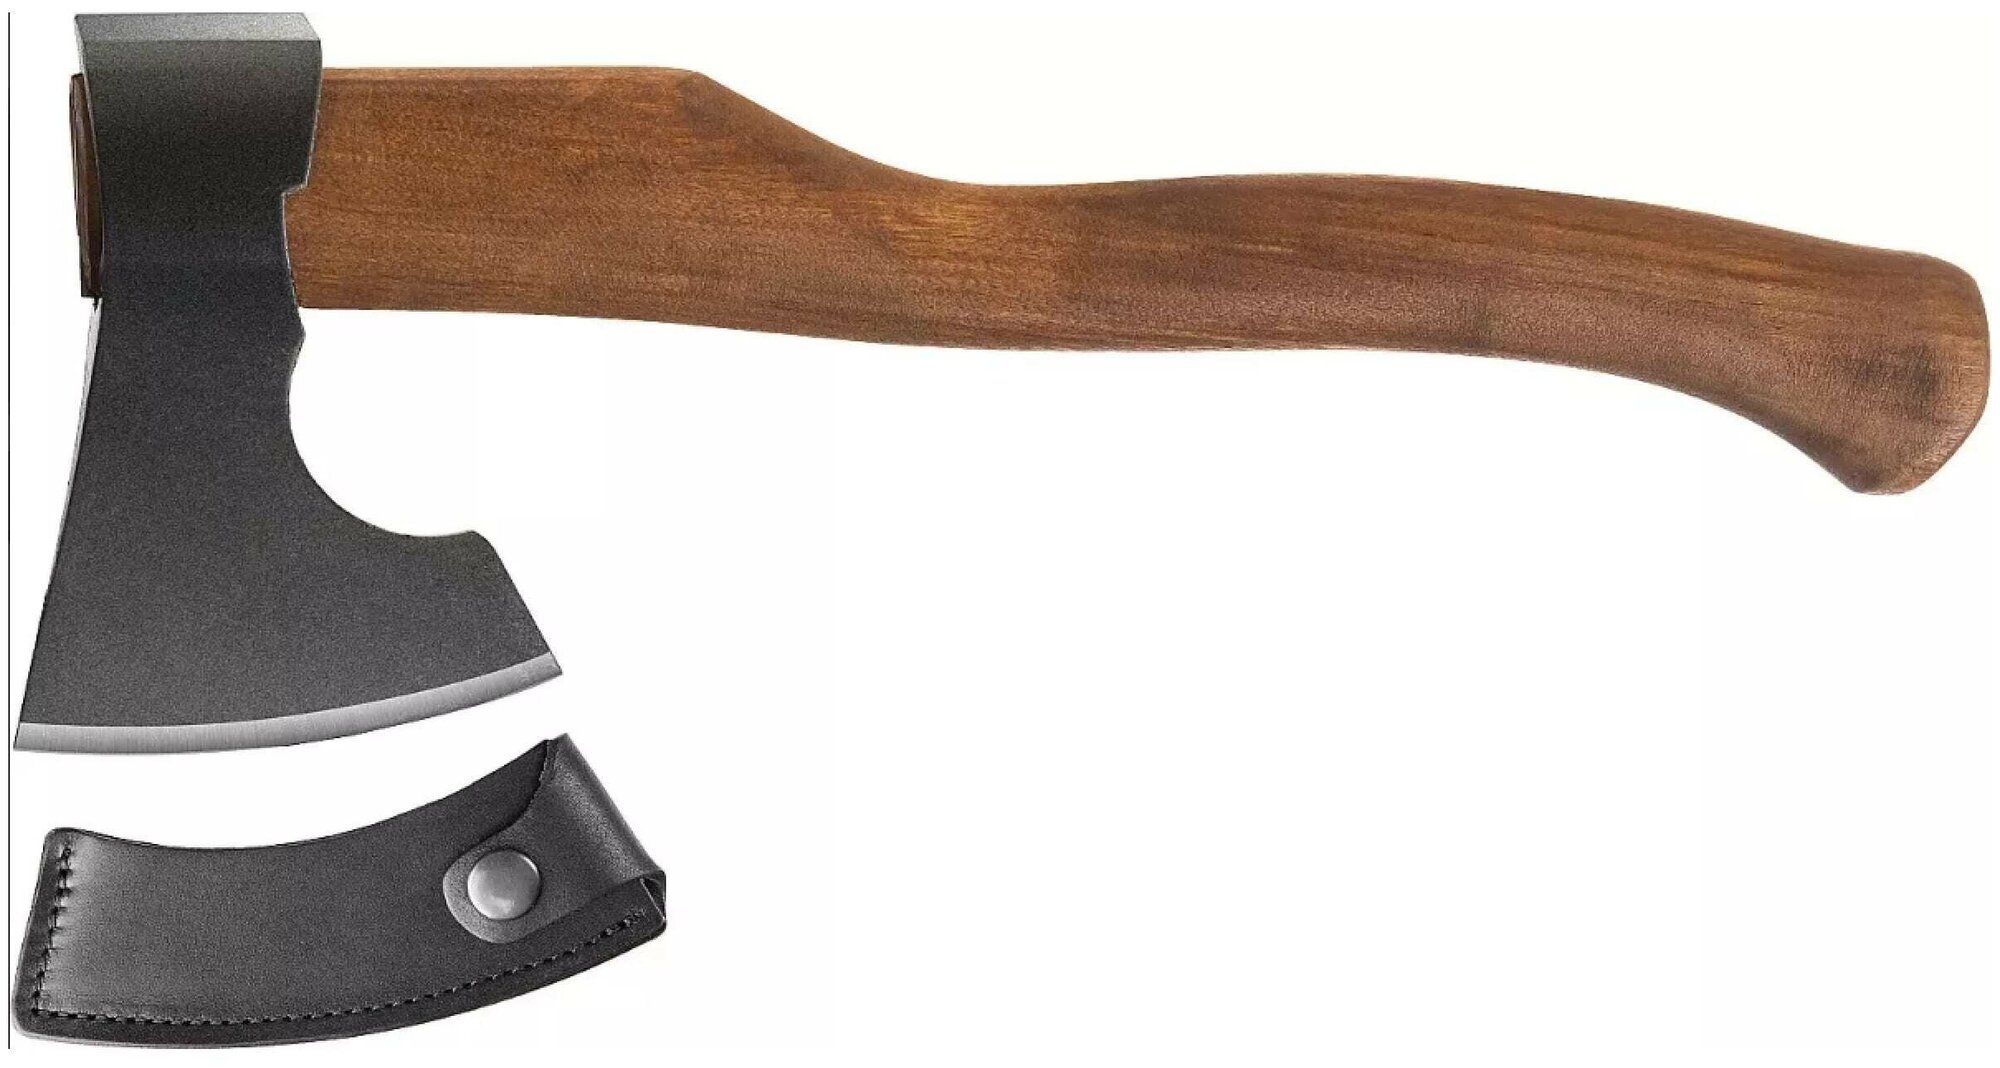 Ижсталь-ТНП Викинг-Премиум 600 г топор кованый, деревянная рукоятка